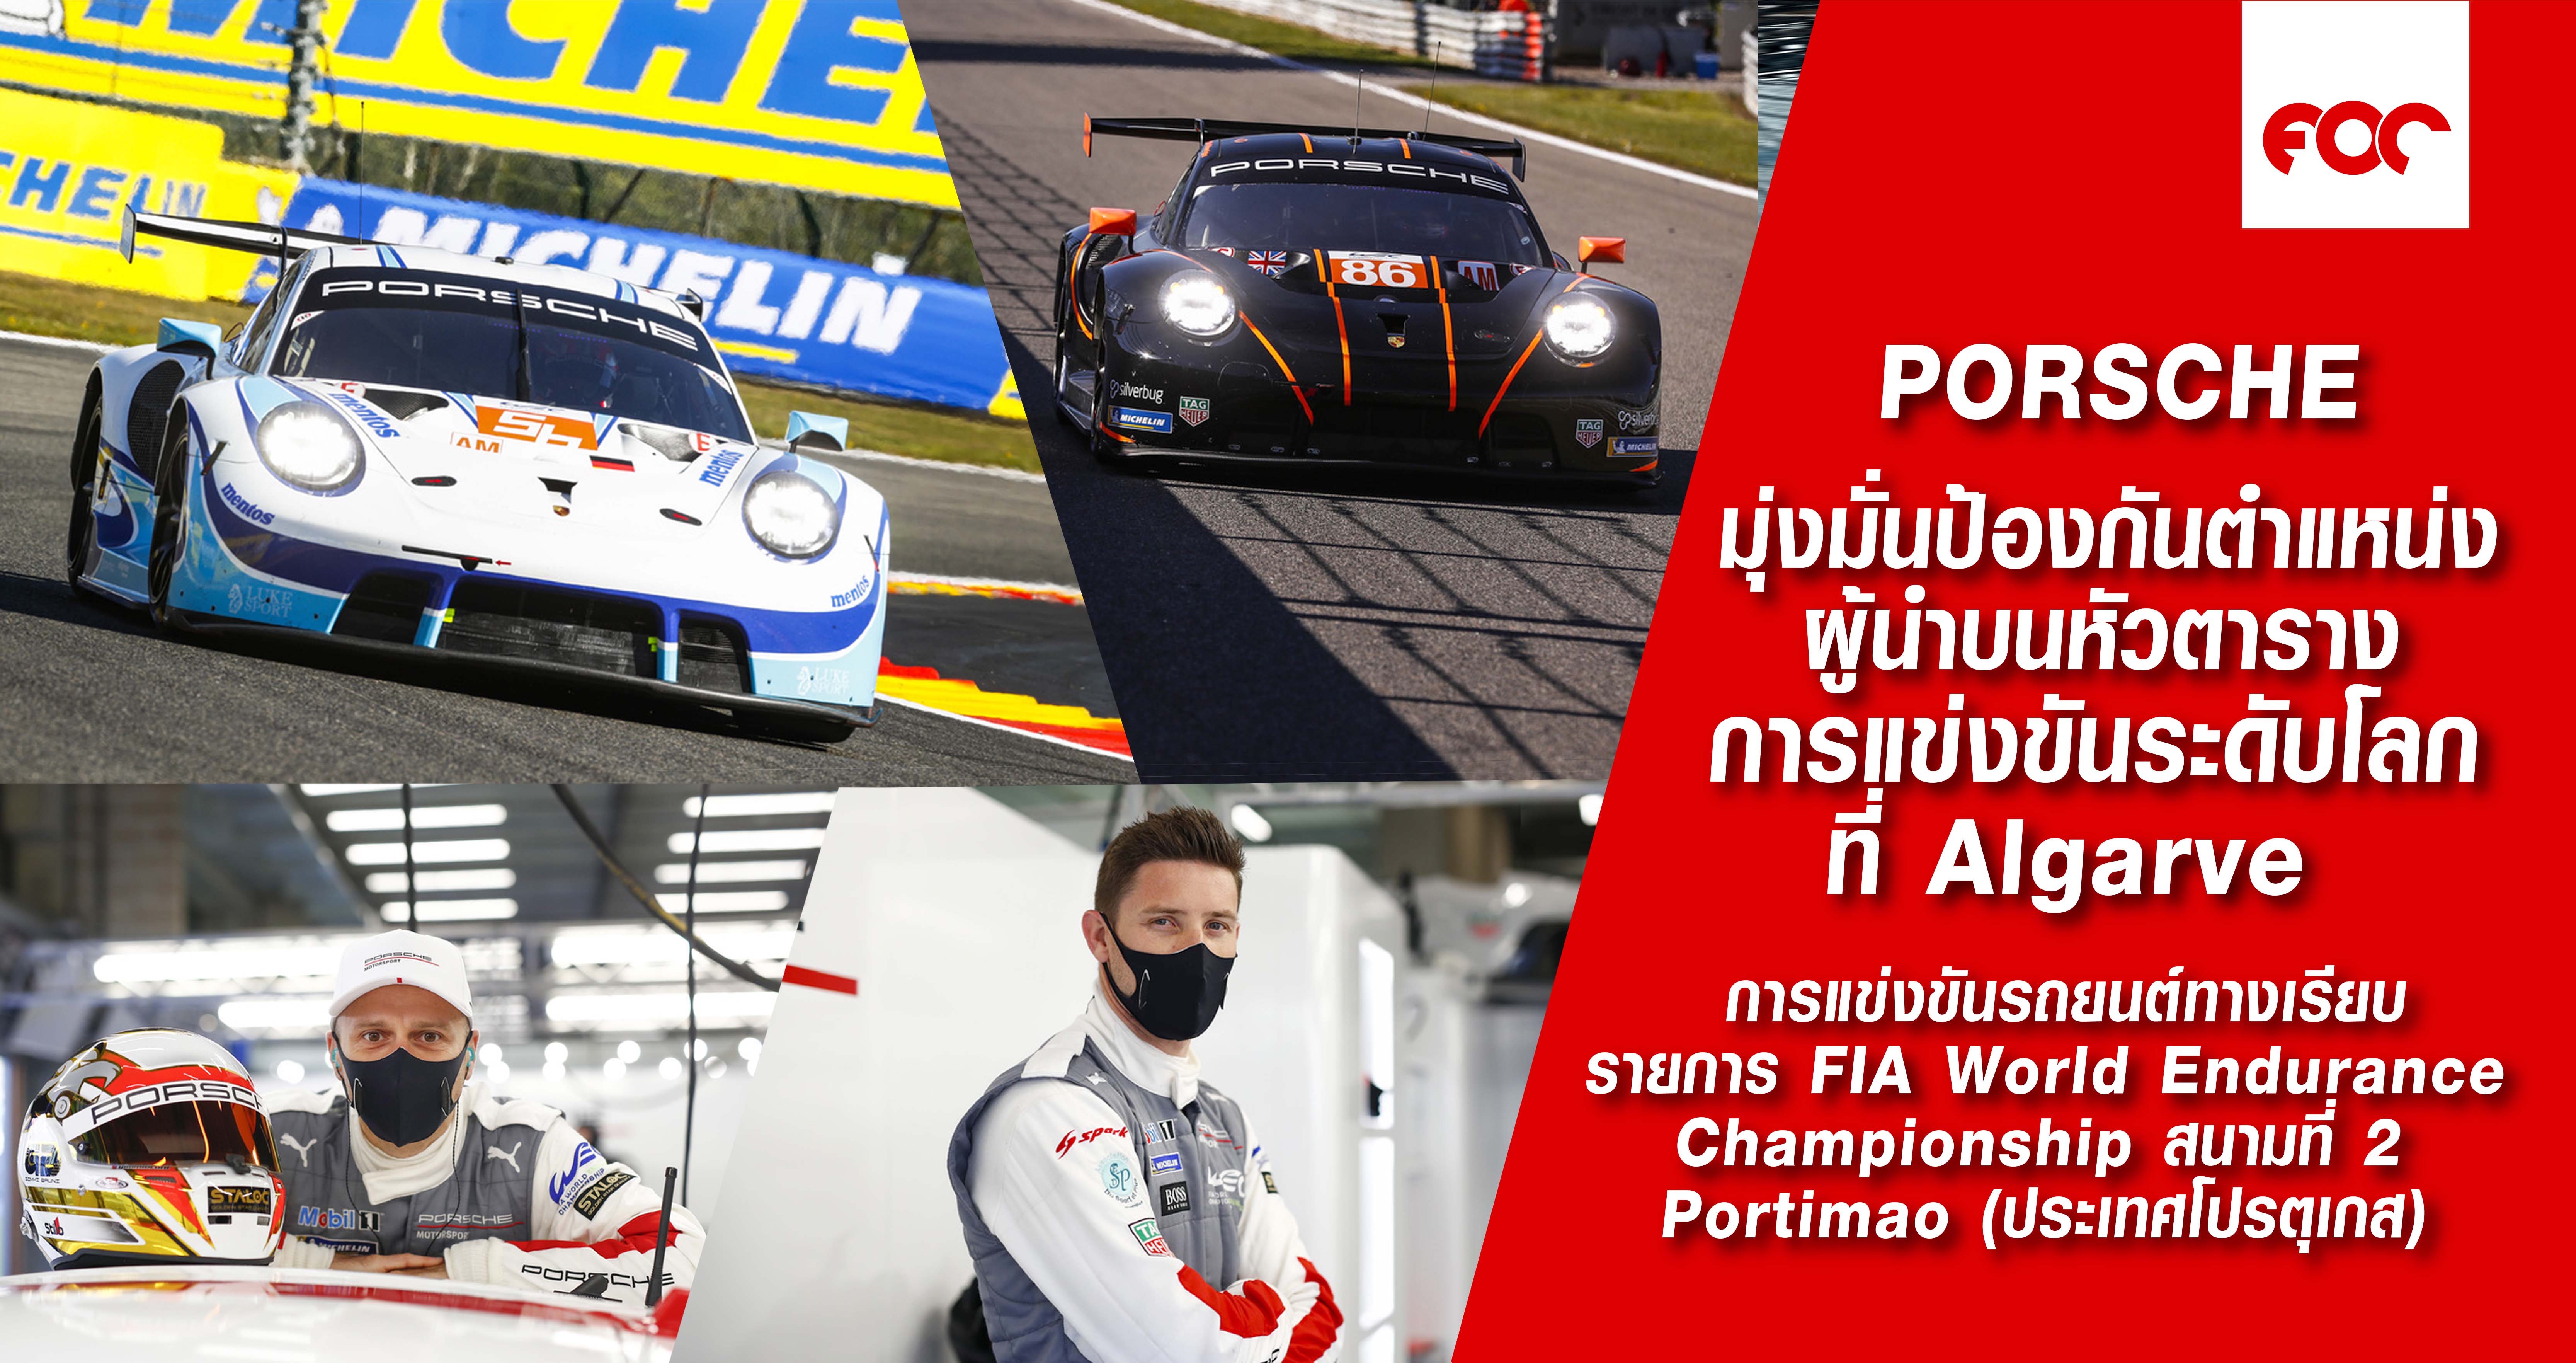 พรีวิว การแข่งขันรถยนต์ทางเรียบรายการ FIA World Endurance Championship สนามที่ 2 Portimão (ประเทศโปรตุเกส)